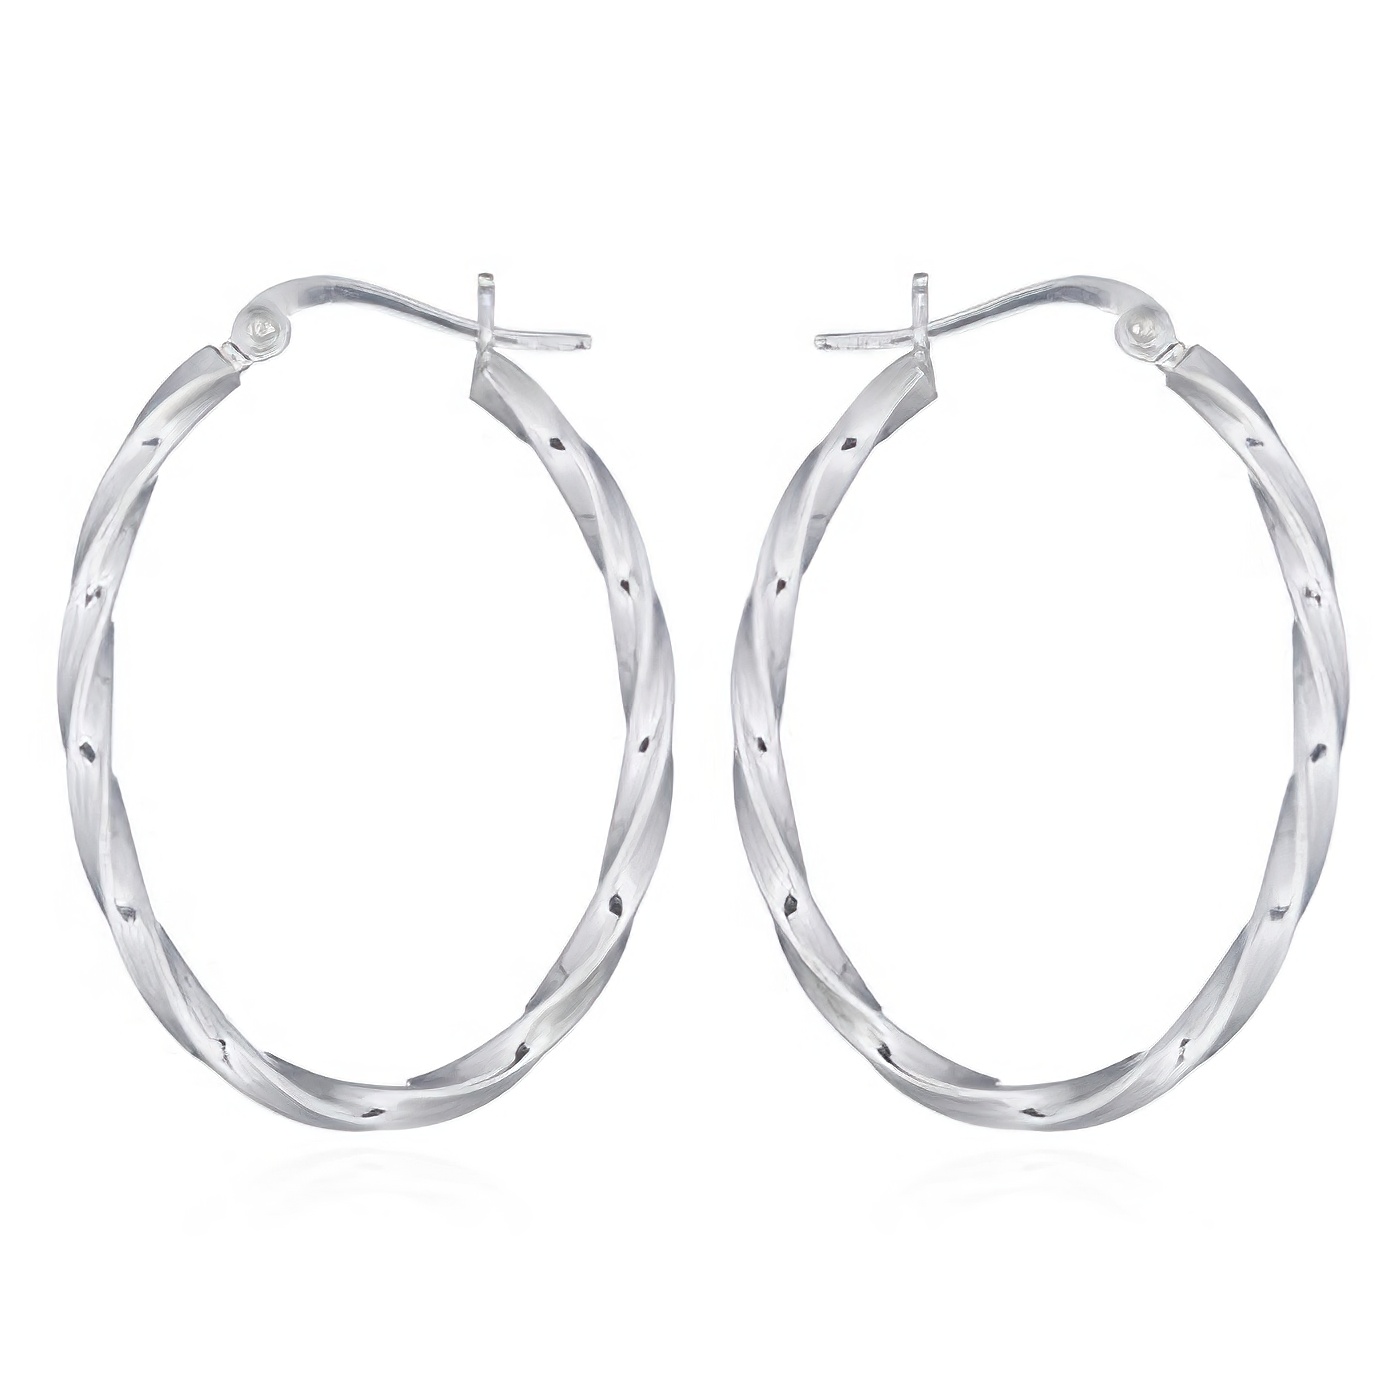 Oval Twisted Sterling 925 Hoop Earrings by BeYindi 